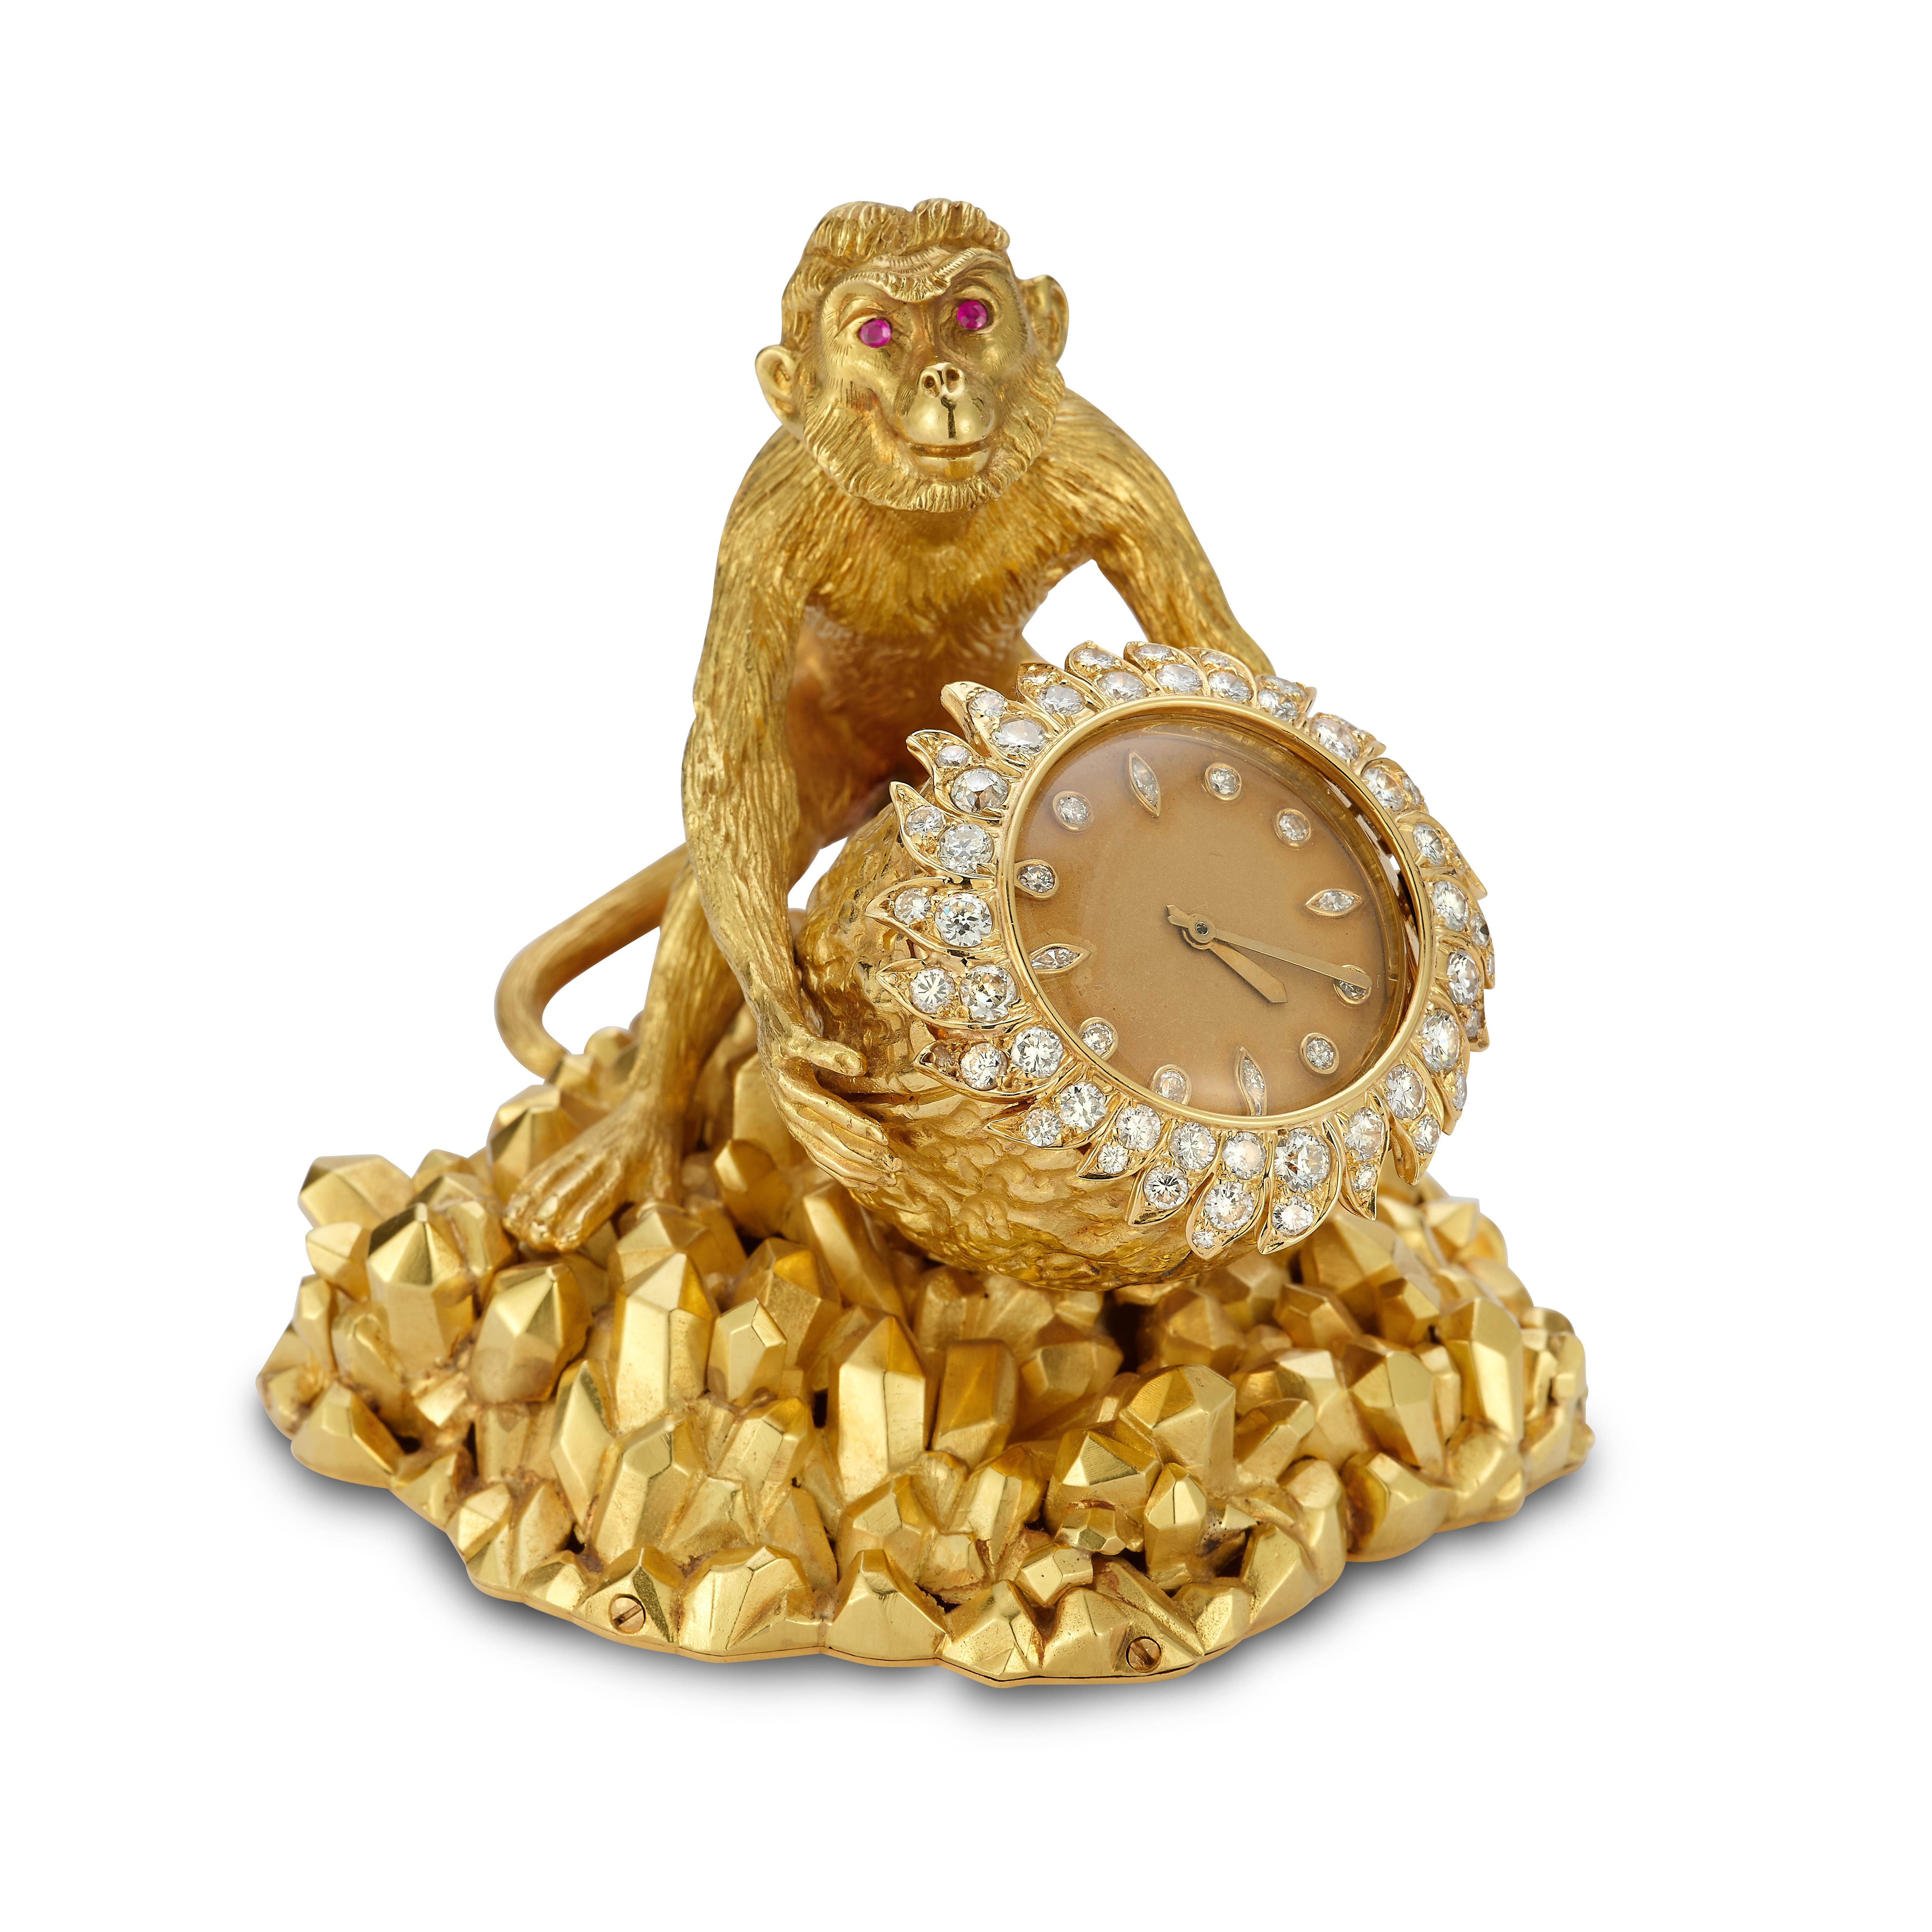 David Webb Affen-Tischuhr

Eine Tischuhr aus 18 Karat Gelbgold in Form einer Walnuss, verziert mit runden und marquise geschliffenen Diamanten. Die Uhr wird von einem Affen mit runden, geschliffenen Rubinaugen gehalten. Das Gesamtgewicht der